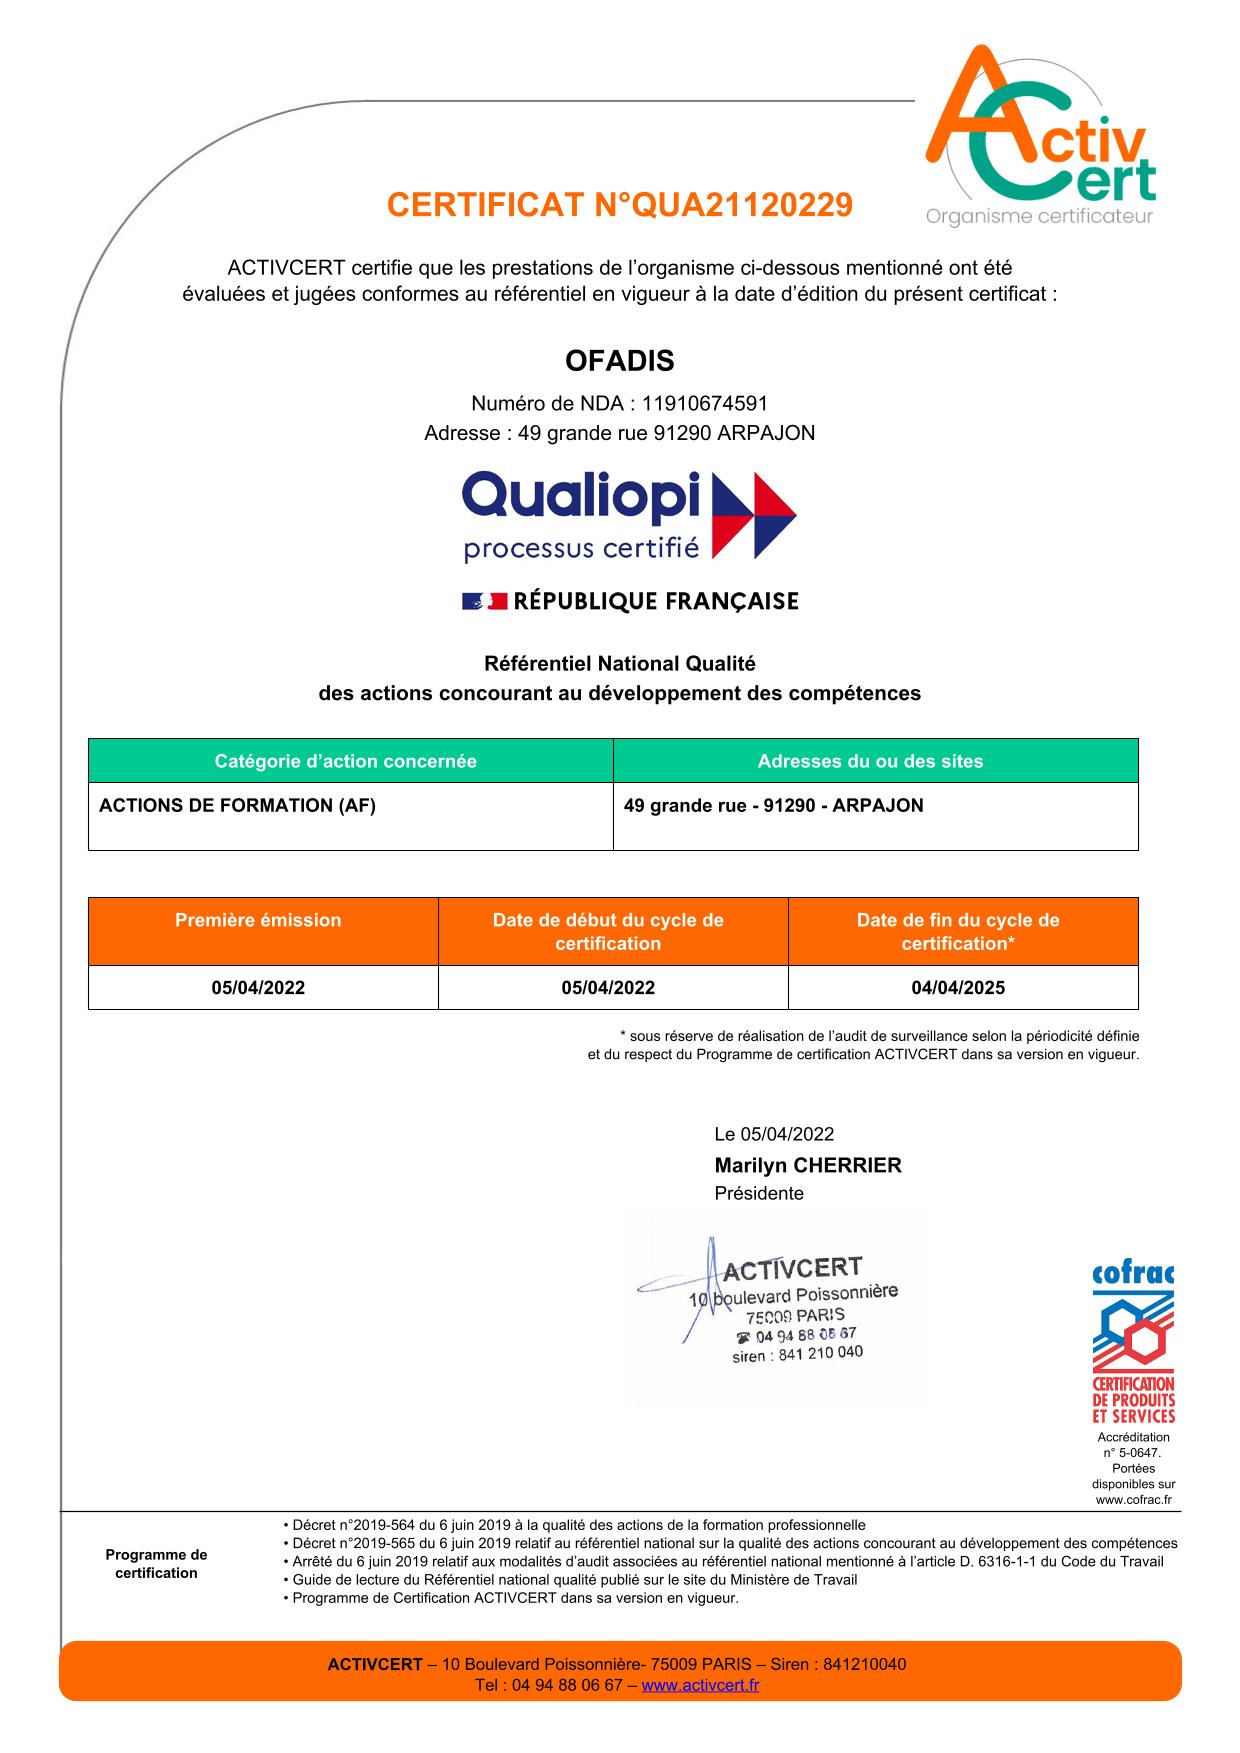 Certificat QUALIOPI OFADIS 